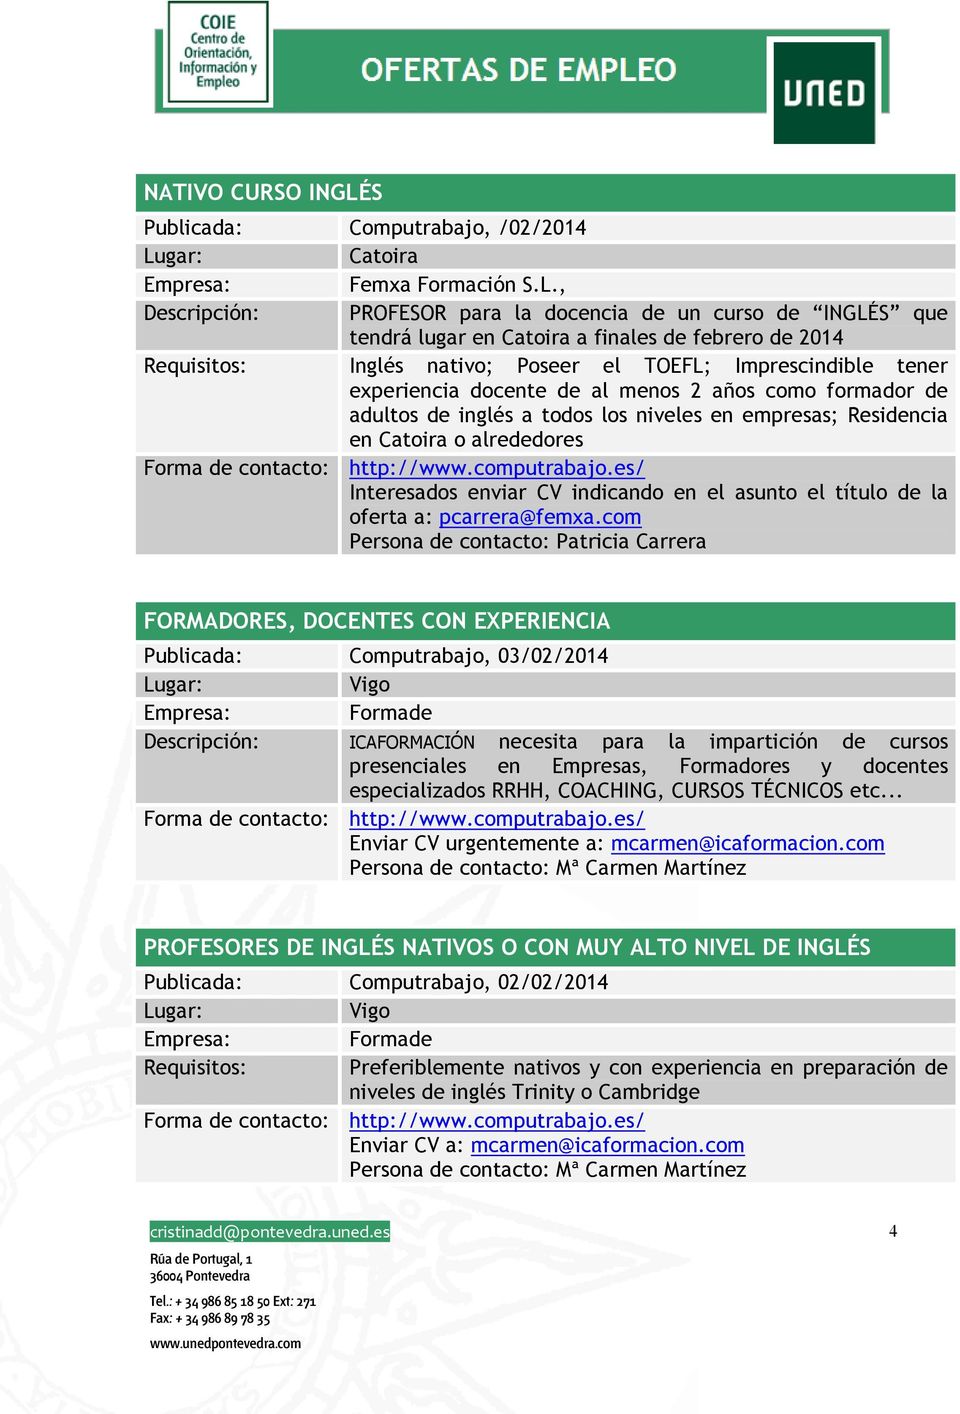 , Descripción: PROFESOR para la docencia de un curso de INGLÉS que tendrá lugar en Catoira a finales de febrero de 2014 Requisitos: Inglés nativo; Poseer el TOEFL; Imprescindible tener experiencia